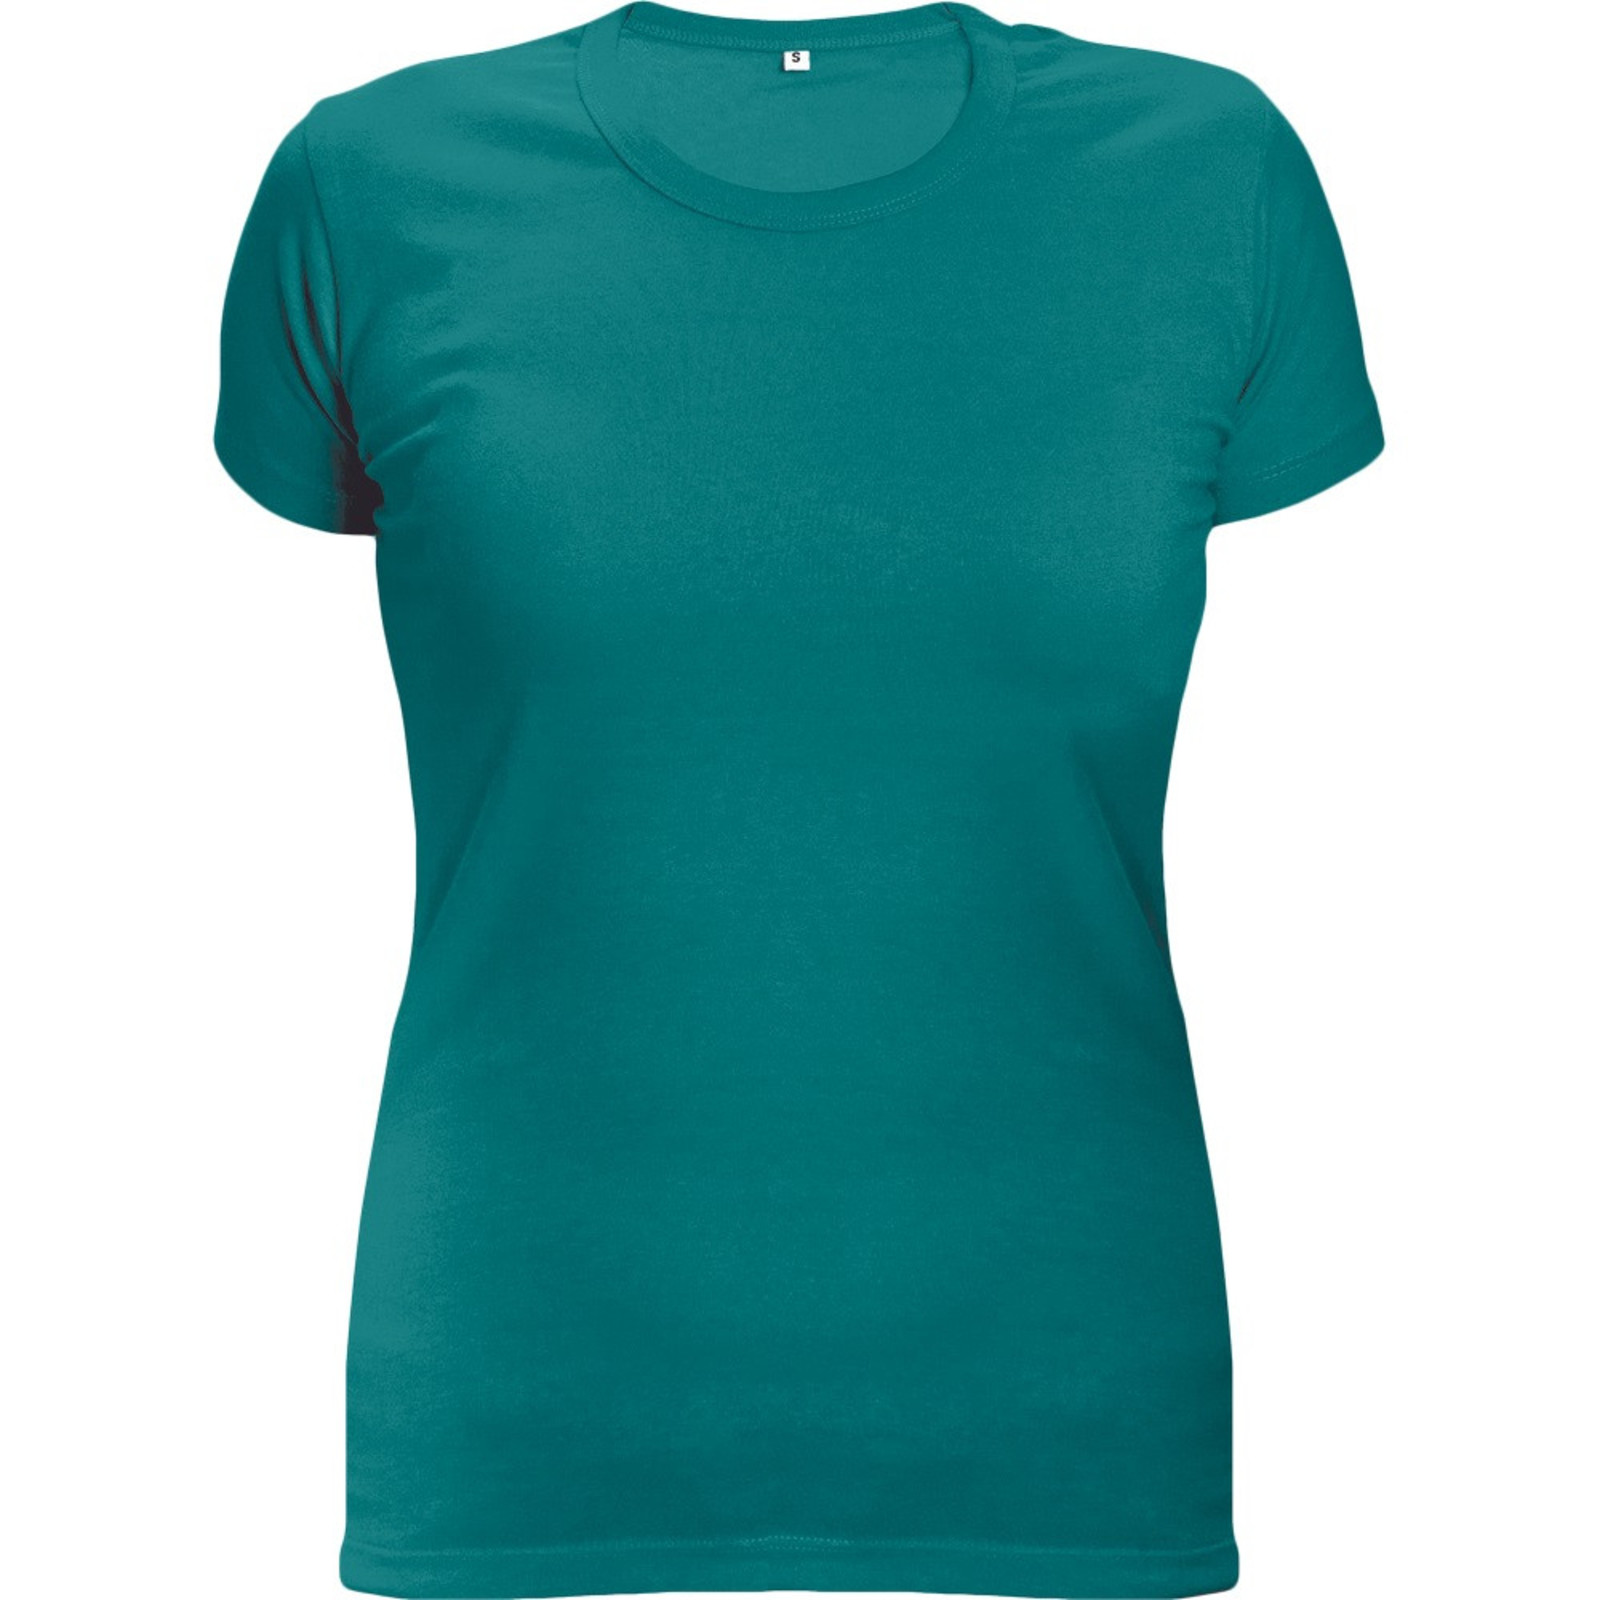 Dámske tričko s krátkym rukávom Surma Lady - veľkosť: XL, farba: malachitová